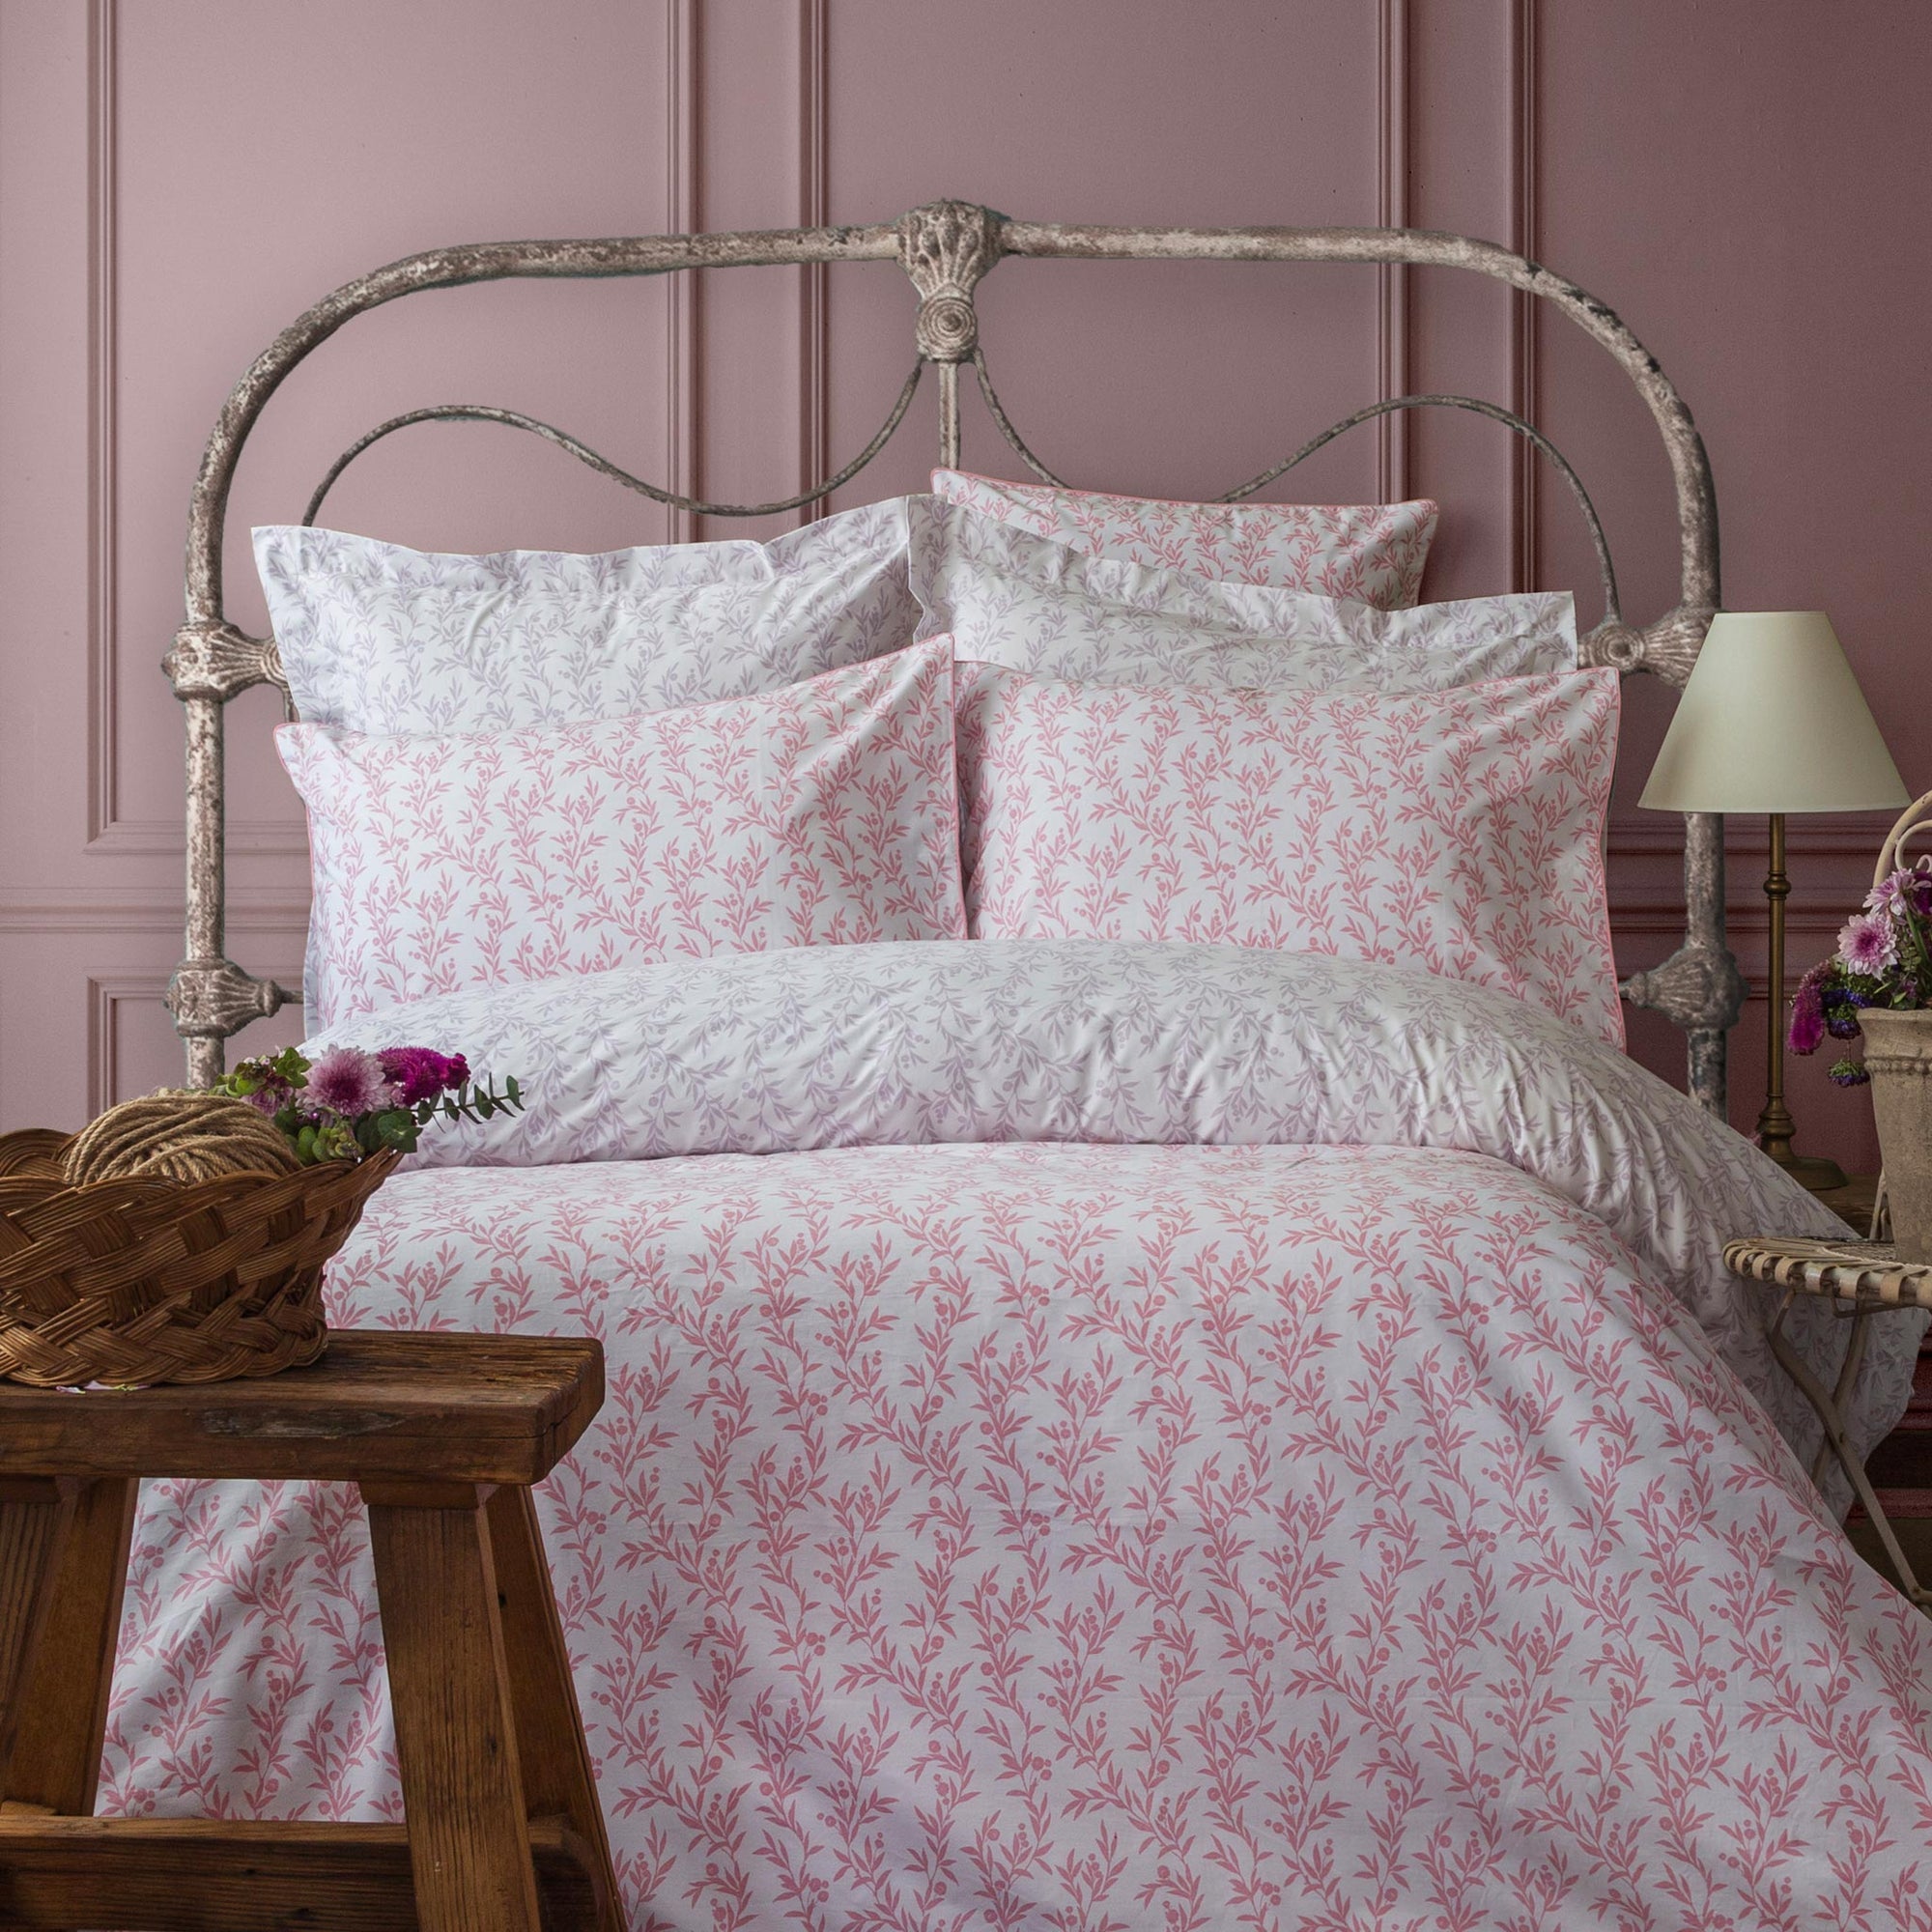 Bettwäsche-Set aus reinem Perkal mit Blumenmuster in Flieder und Rosa